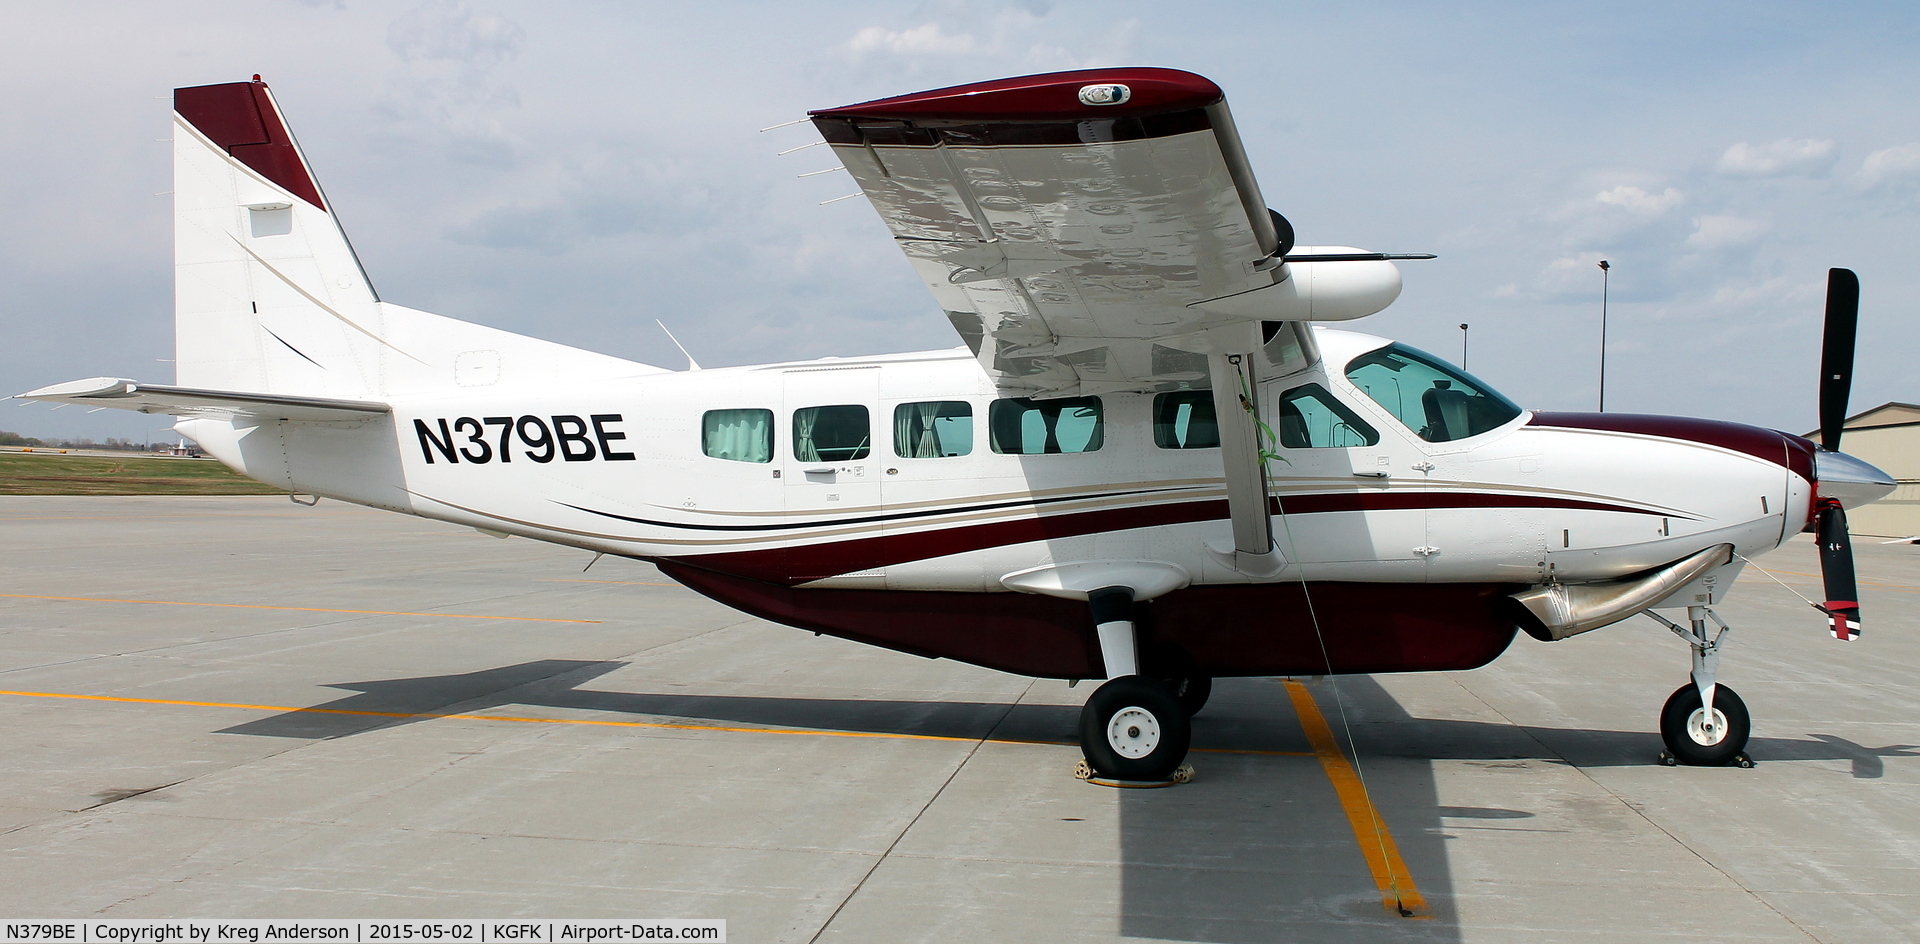 N379BE, 2007 Cessna 208 C/N 20800414, Cessna 208 Caravan on the ramp.